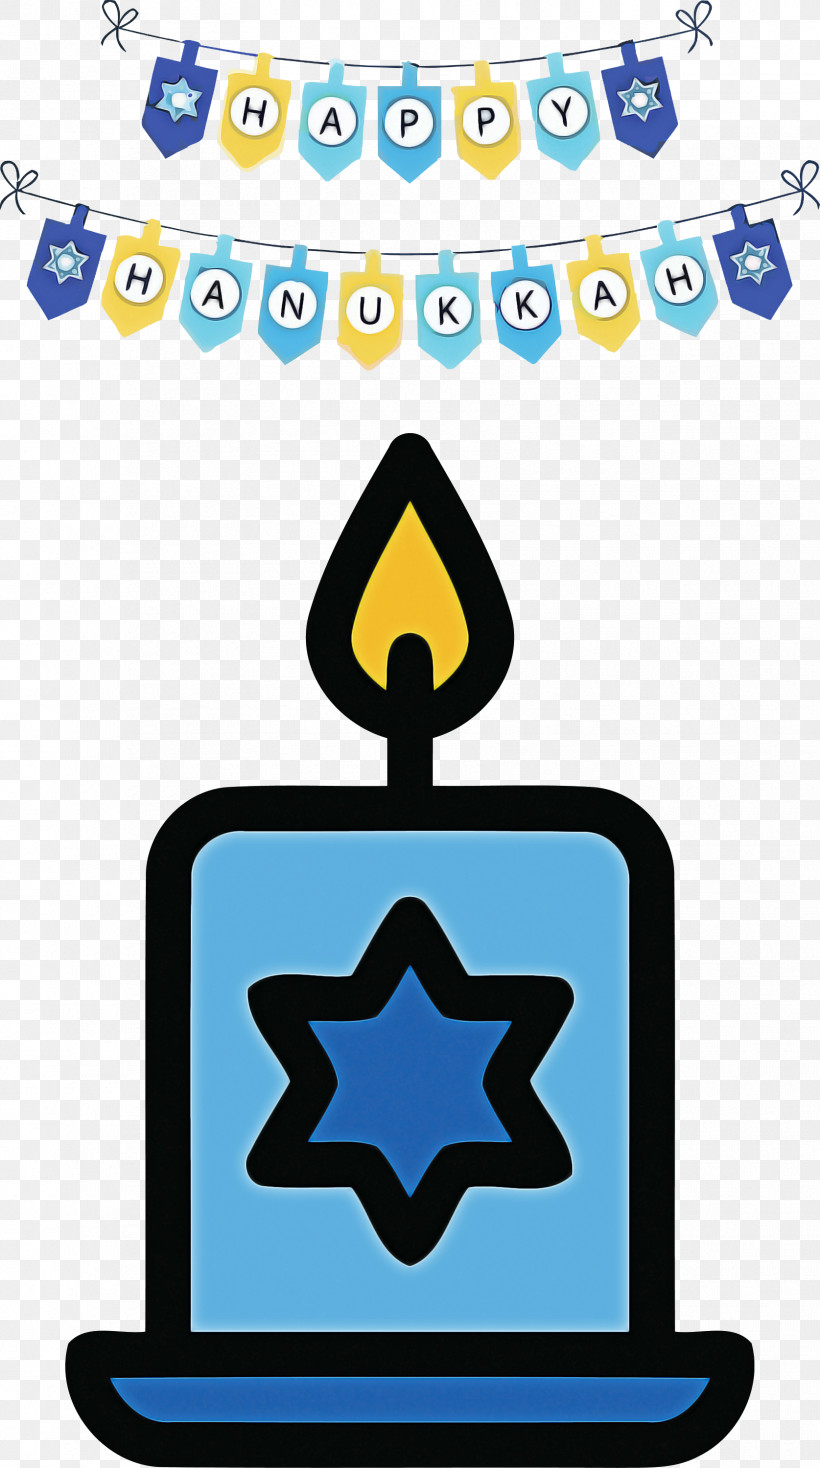 Hanukkah Happy Hanukkah, PNG, 1675x3000px, Hanukkah, Computer Graphics, Drawing, Happy Hanukkah, Logo Download Free